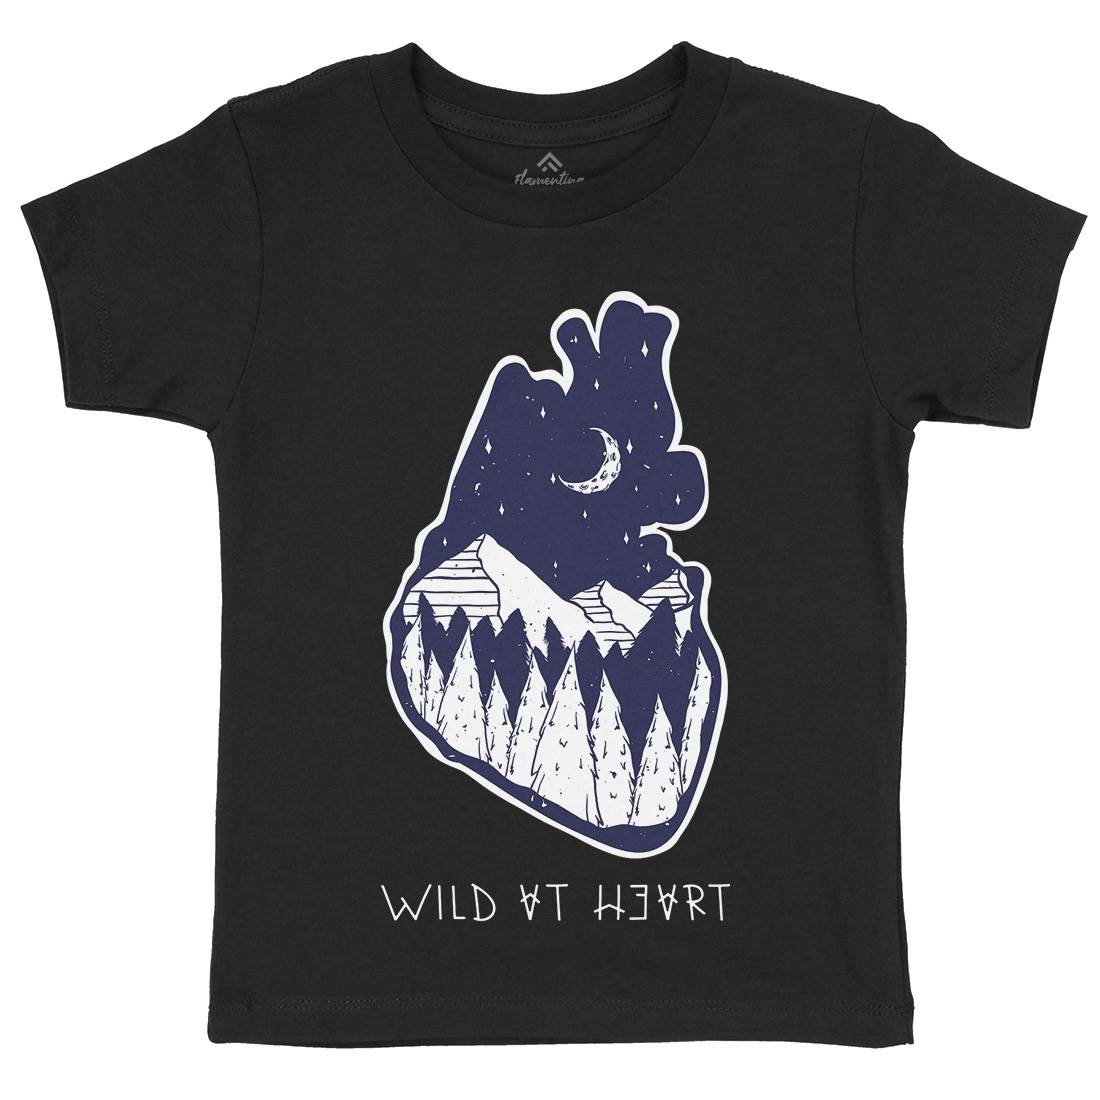 Wild At Heart Kids Crew Neck T-Shirt Nature D498